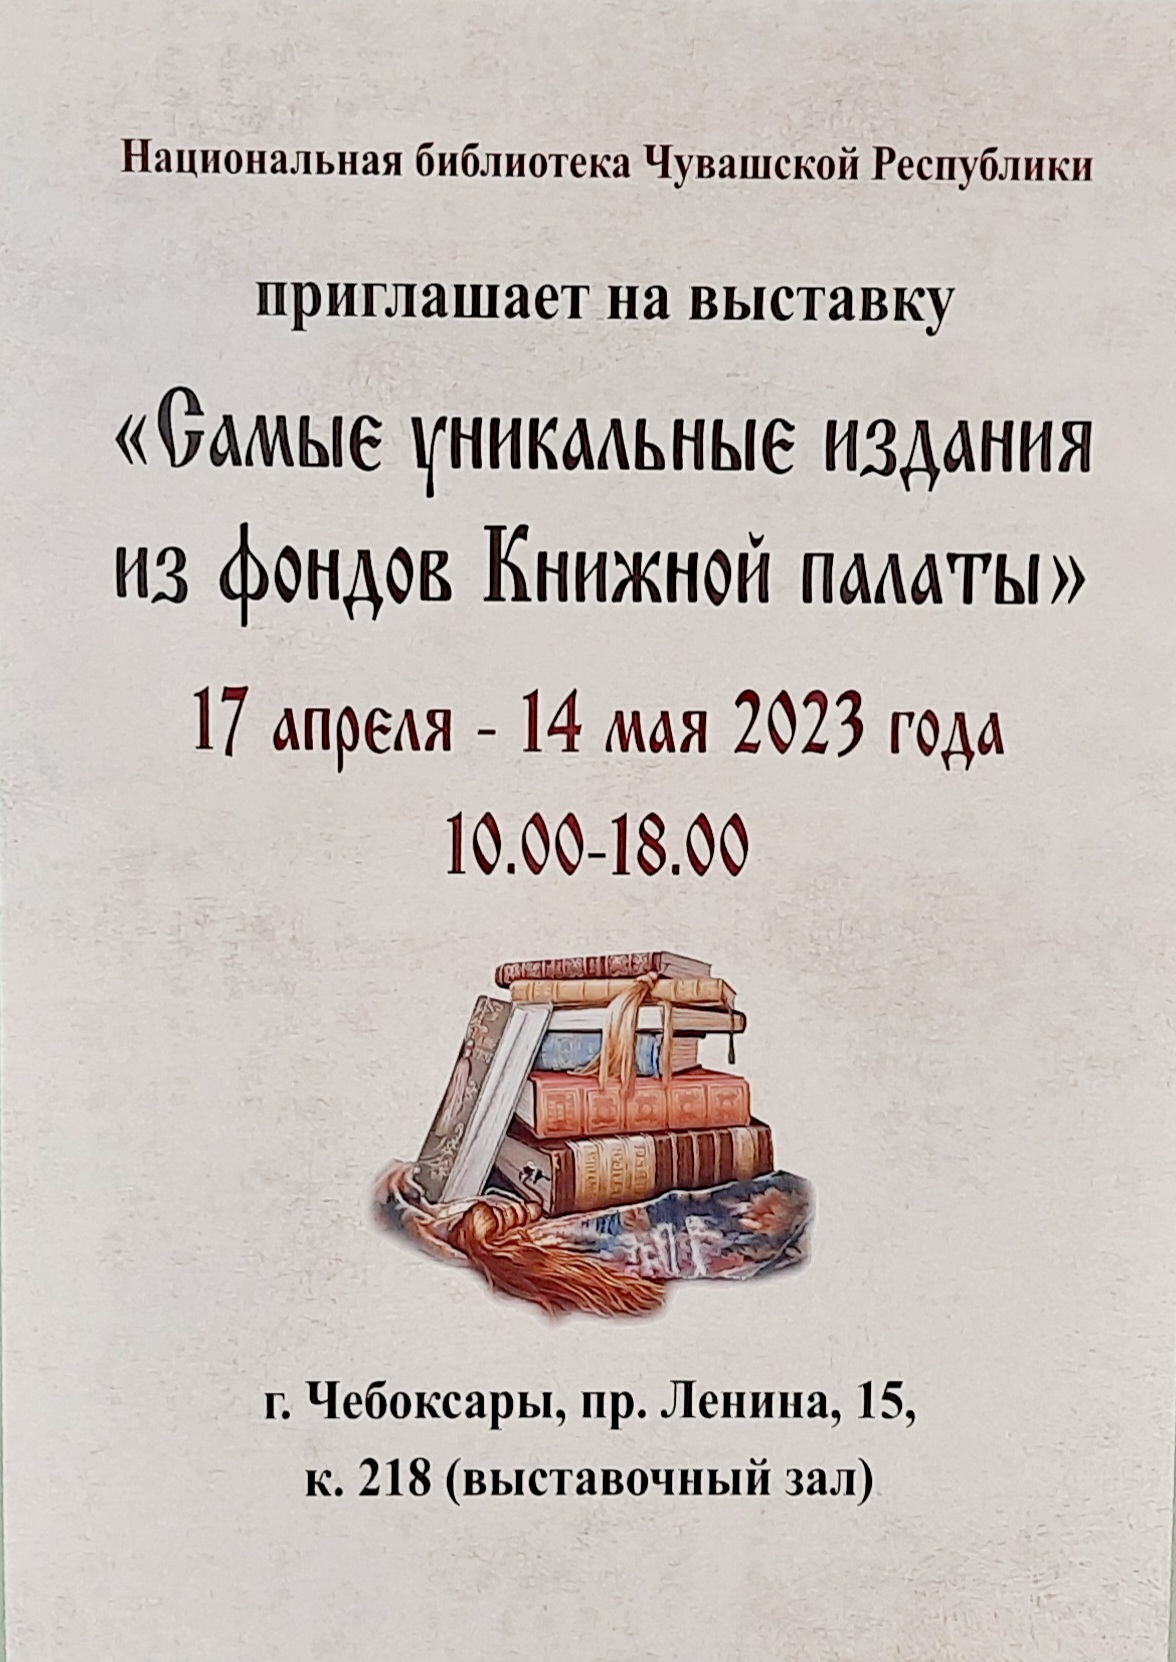 Вы сейчас просматриваете Об уникальных изданиях Книжной палаты Чувашской Республики